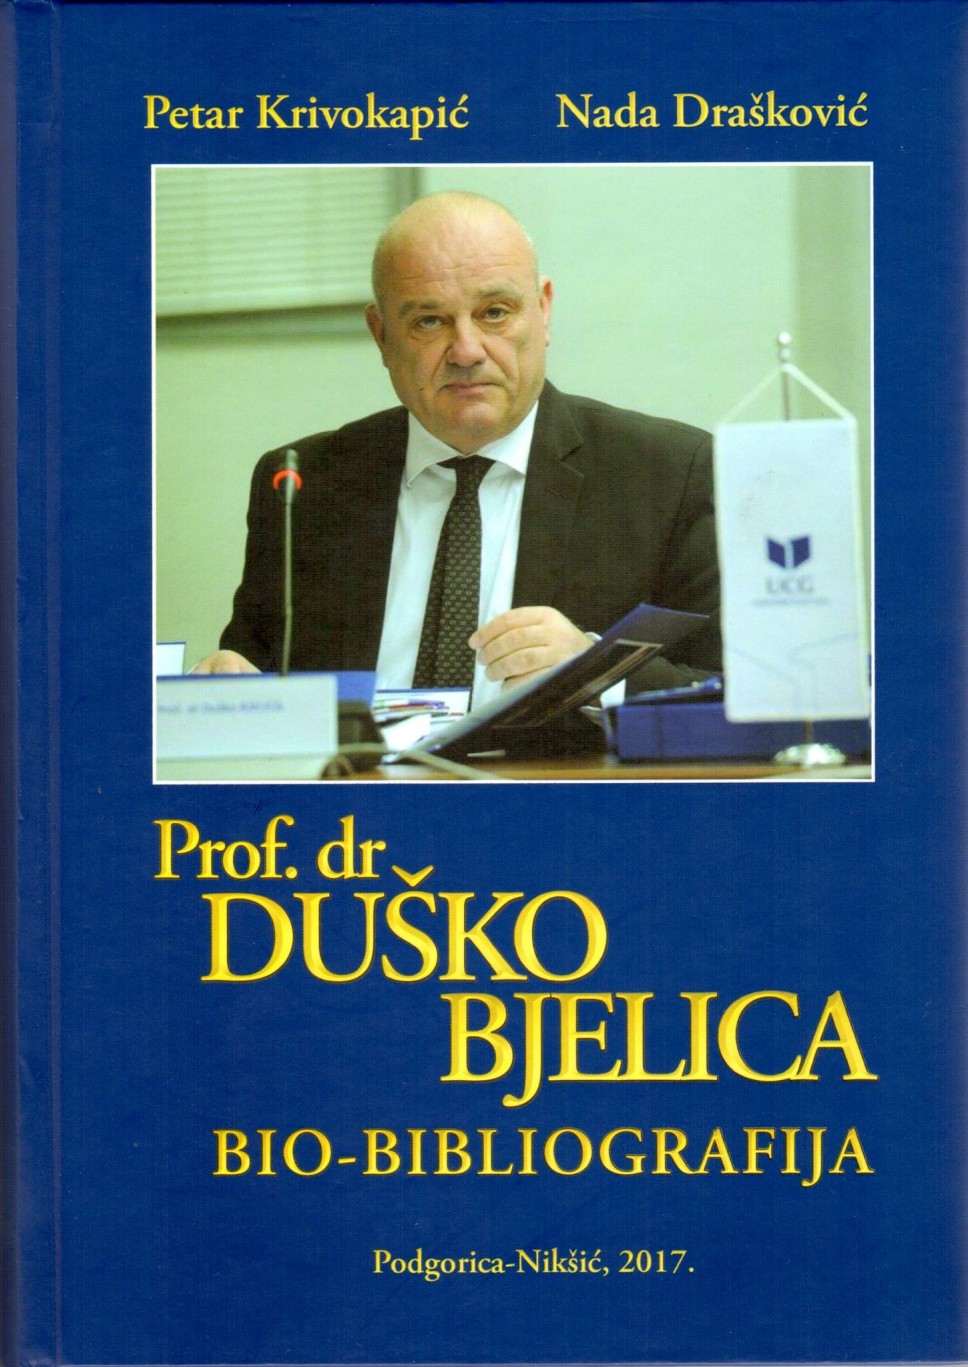 Objavljena biobibliografija prof. dr Duška Bjelice